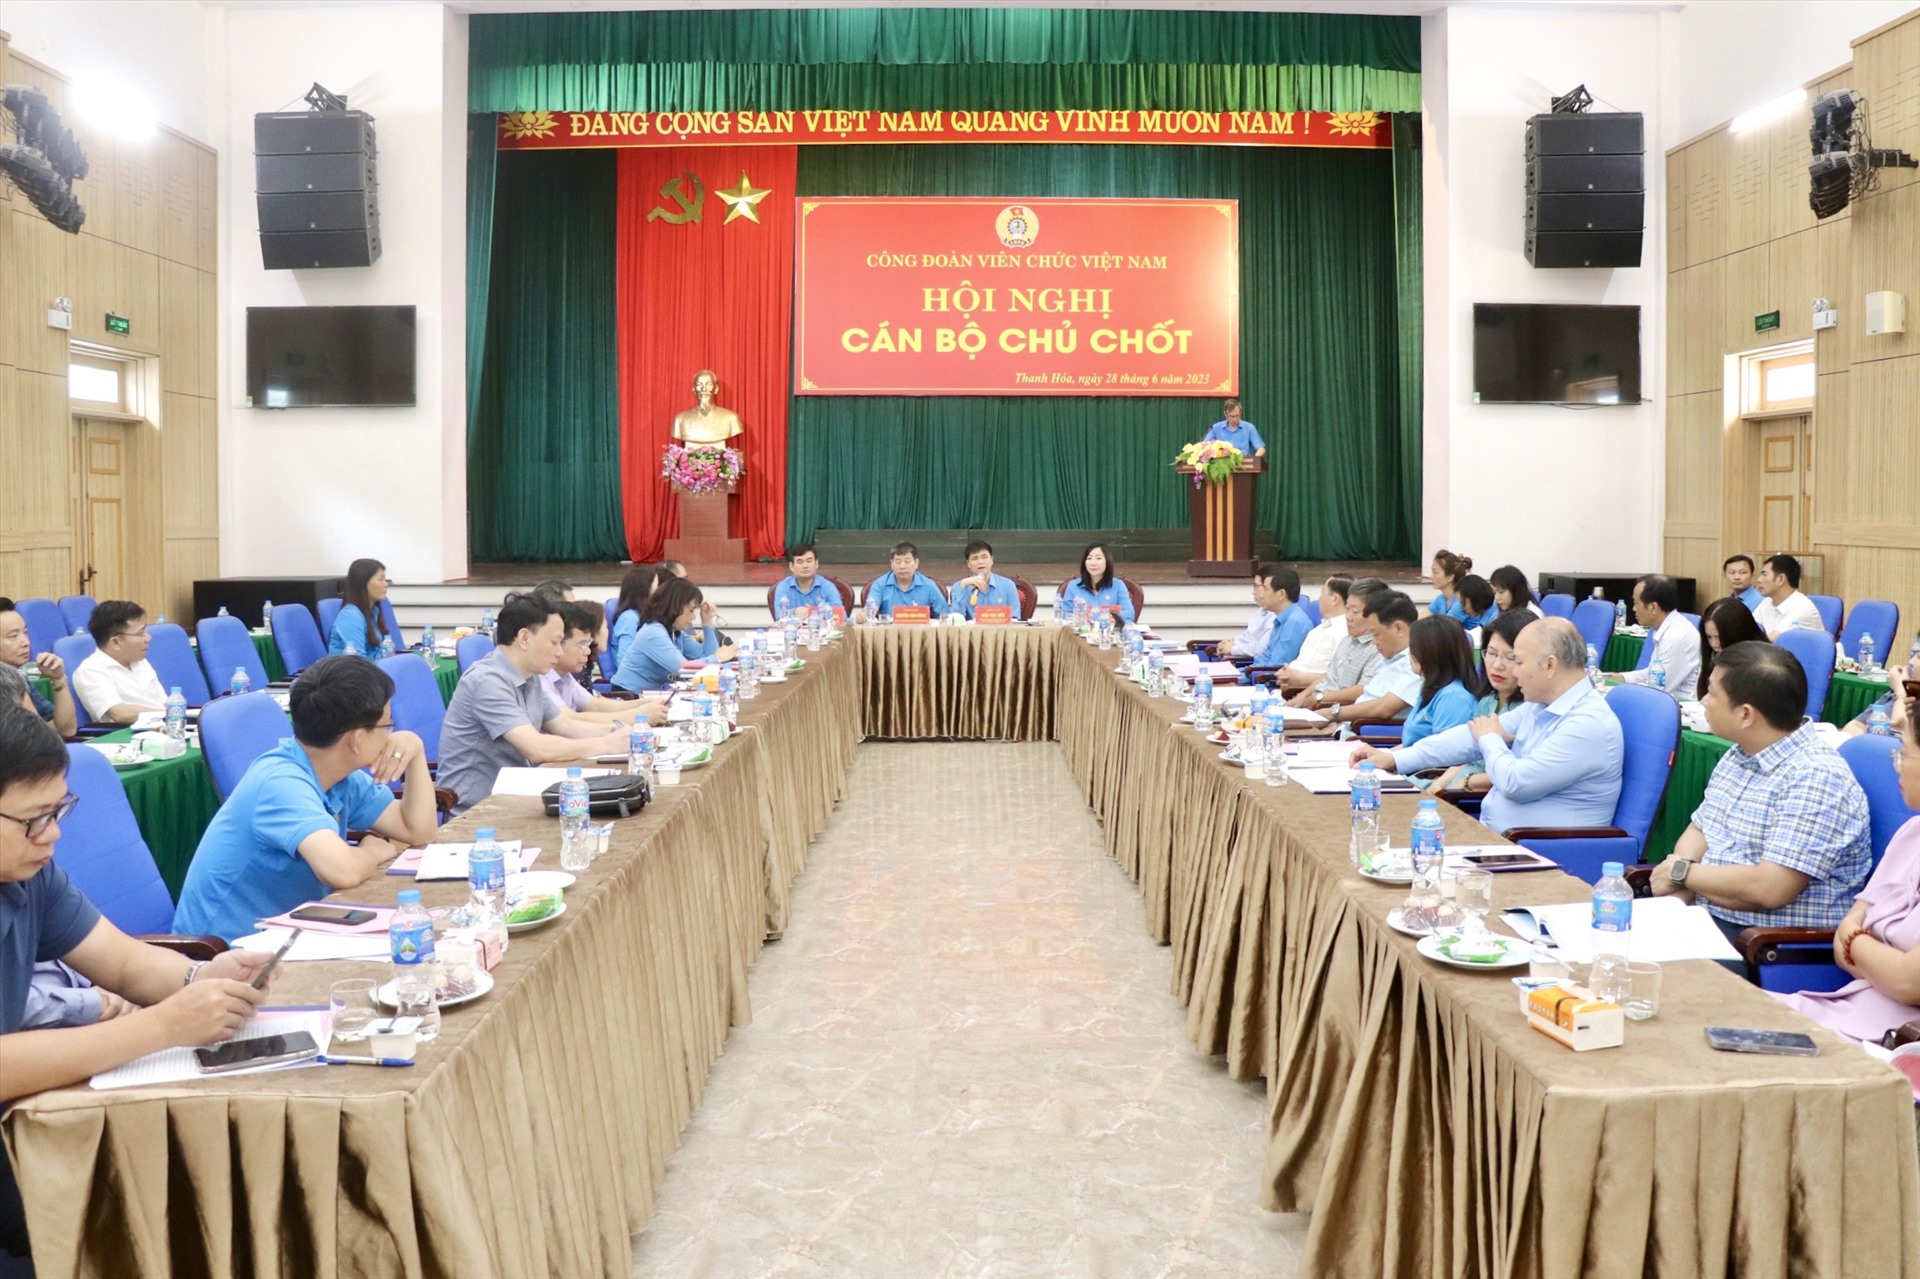 Hội nghị Ban Chấp hành Công đoàn Viên chức Việt Nam lần thứ 15 mở rộng. Ảnh: X.H